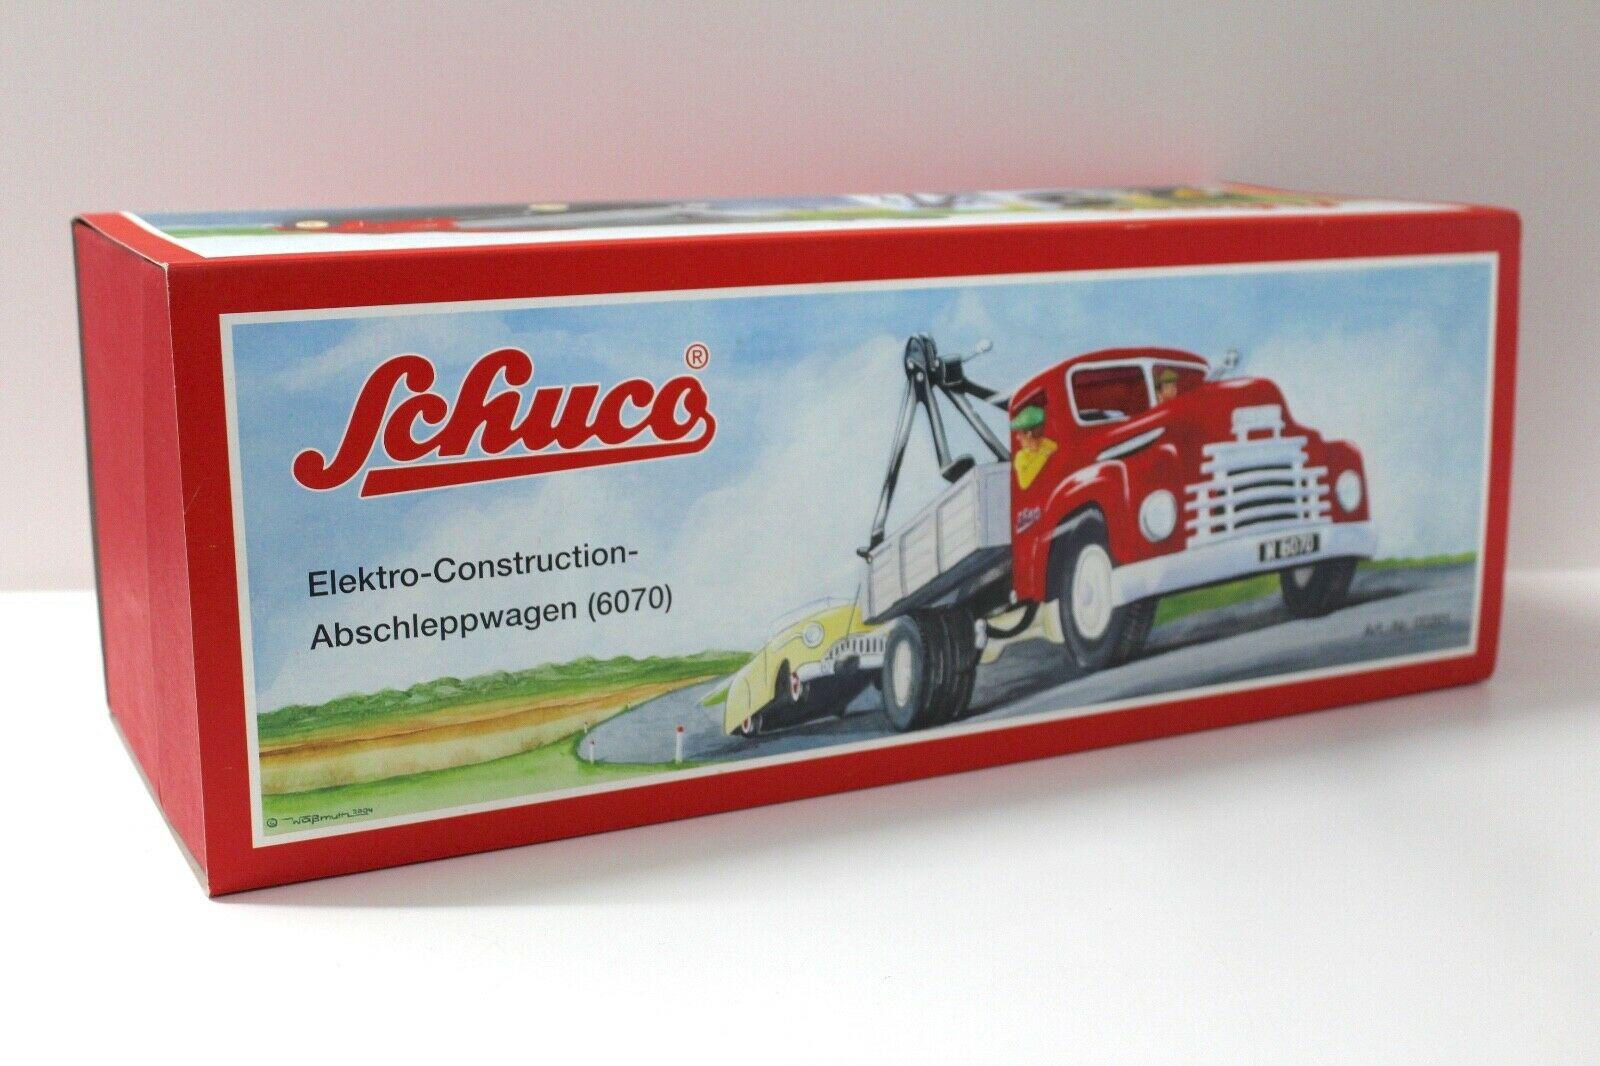 Schuco 6070 Elektro Construction Abschleppwagen Abschlepper LKW red